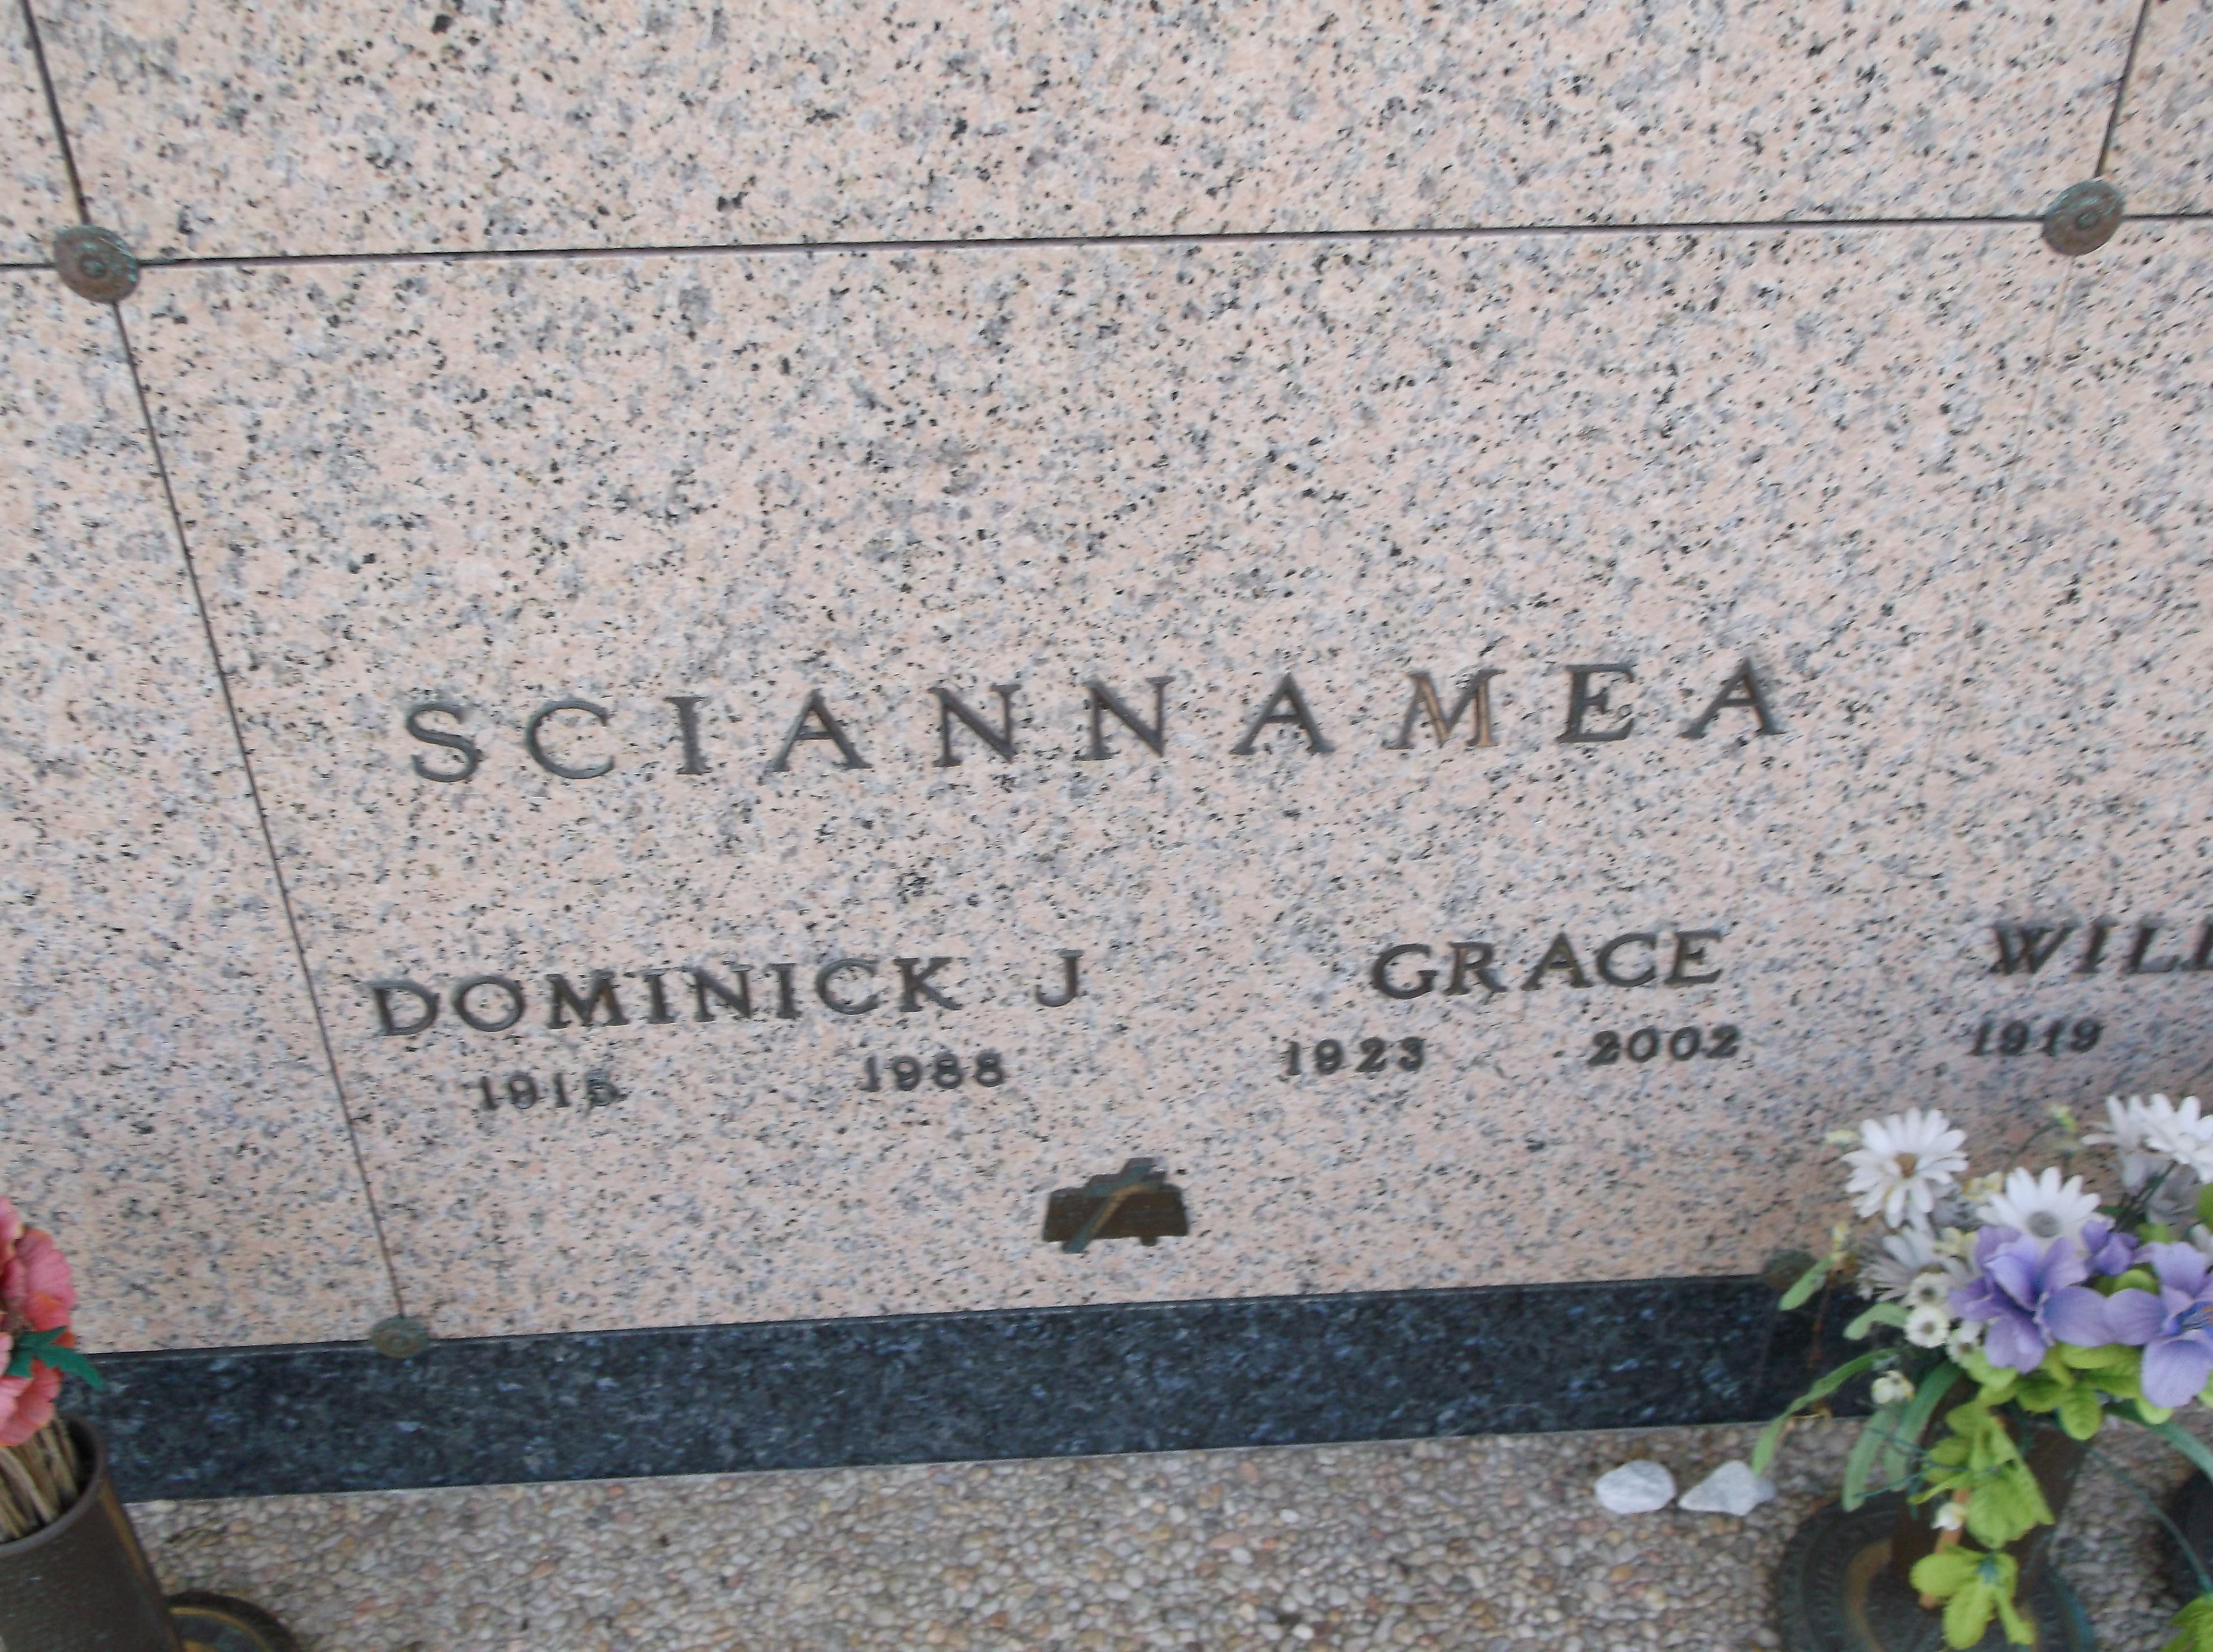 Grace Sciannamea